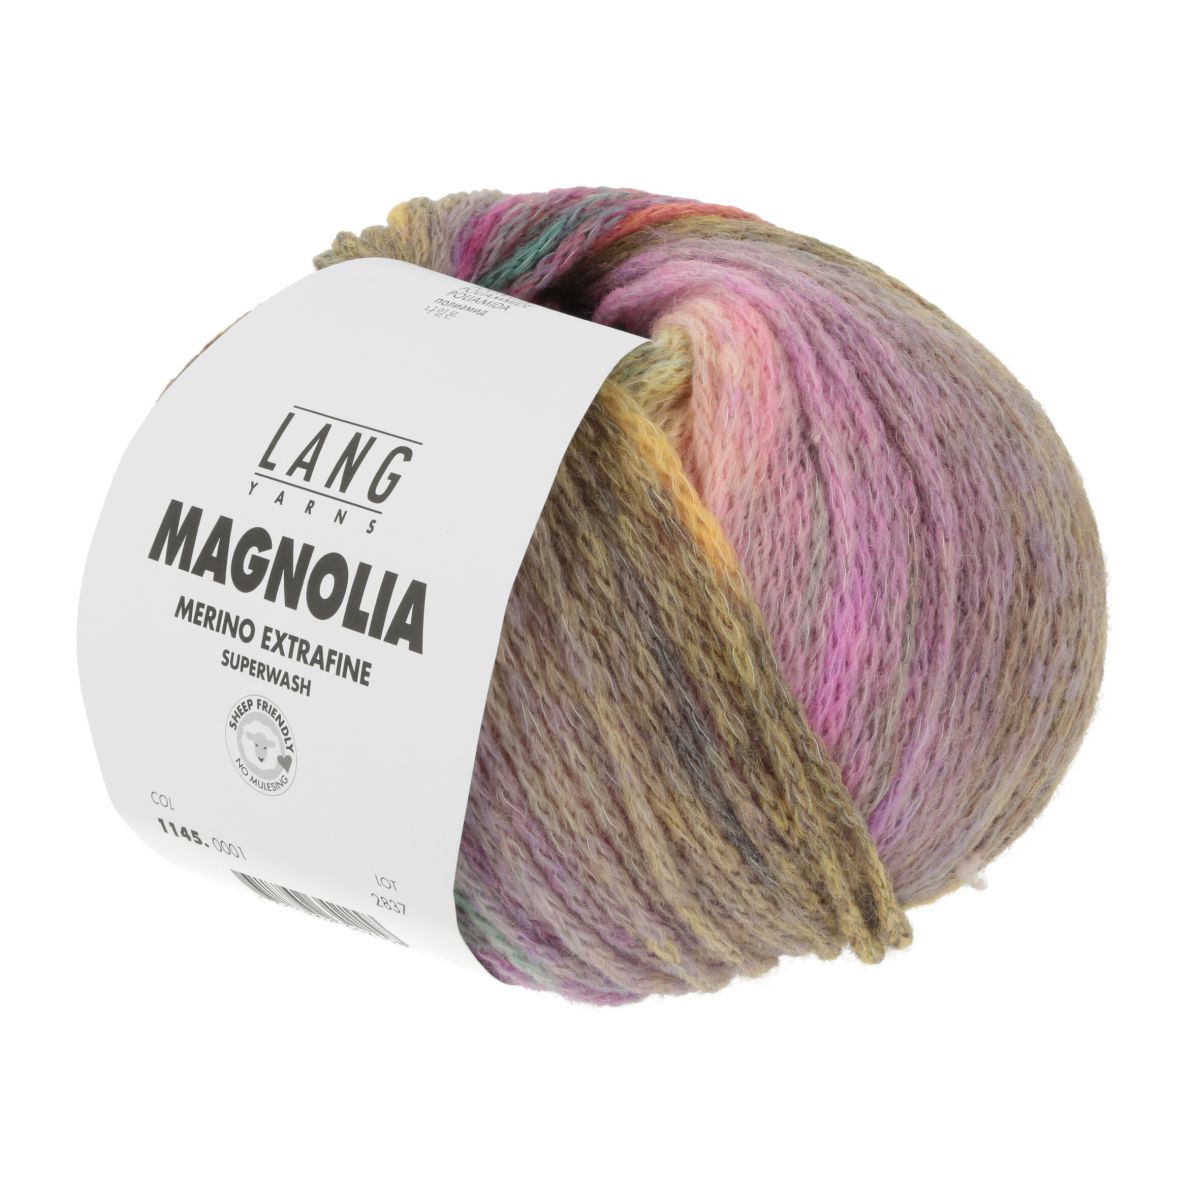 MAGNOLIA - Lang Yarns